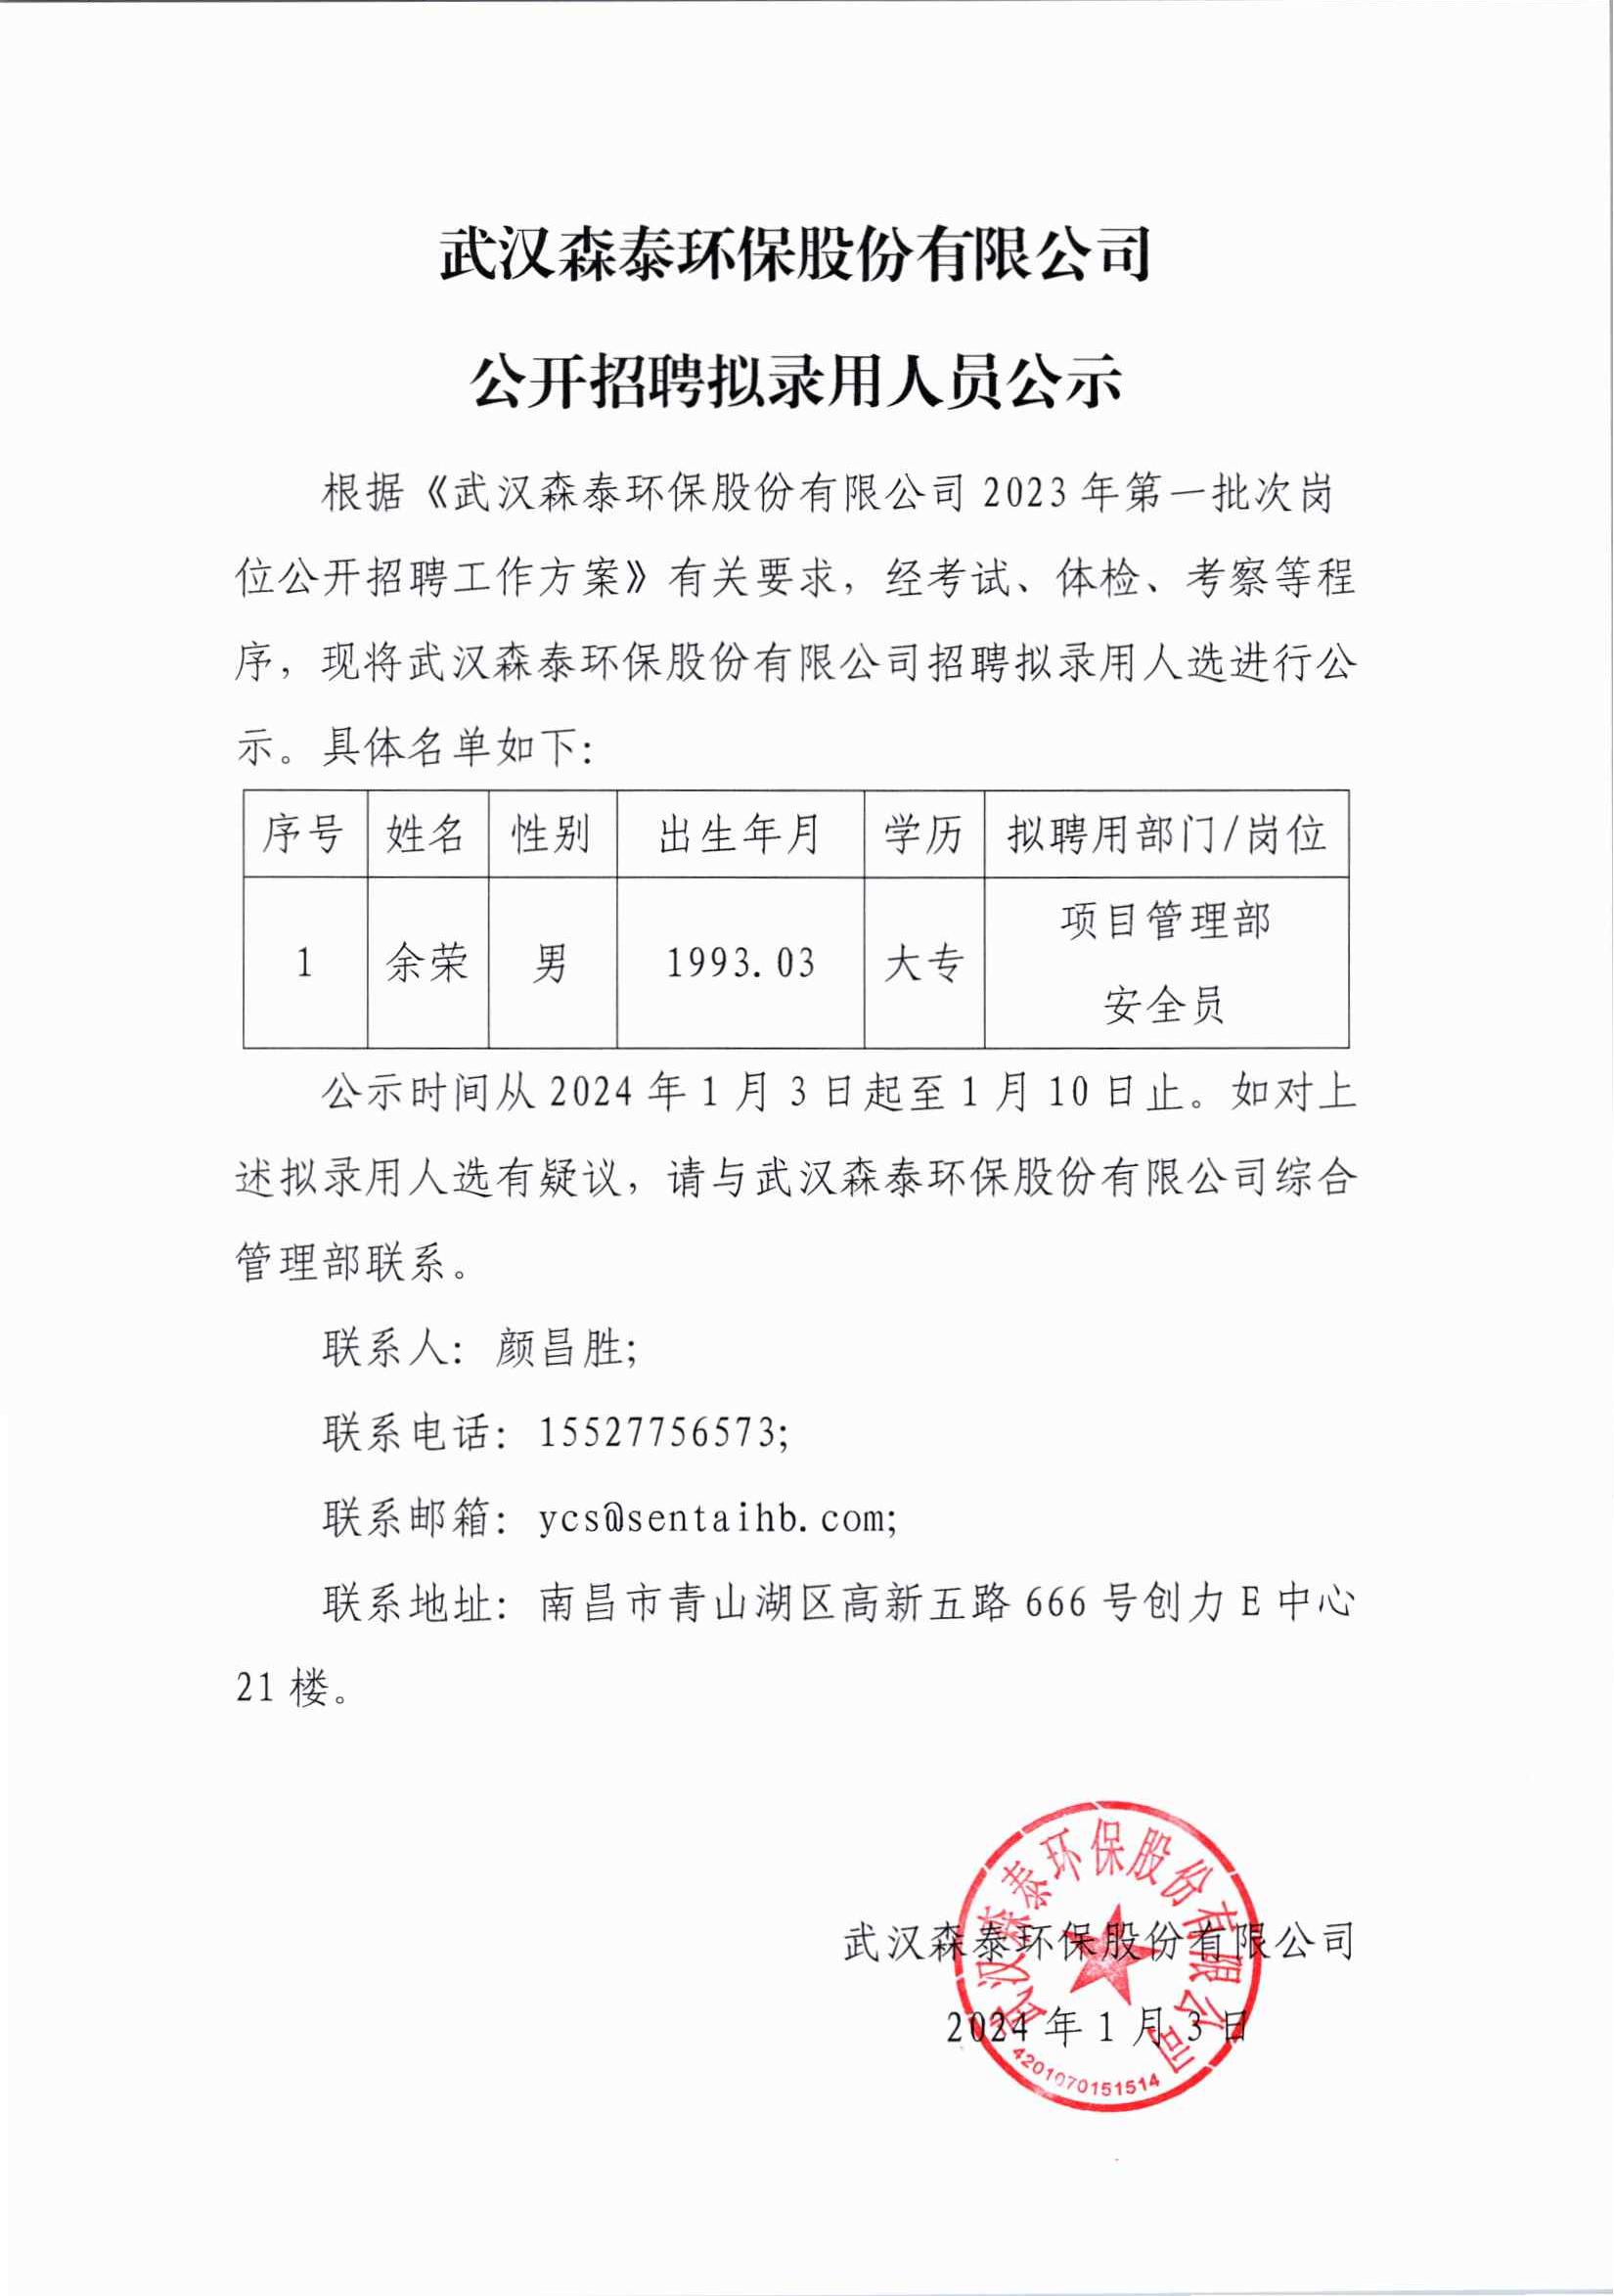 武汉森泰环保股份有限公司公开招聘拟录用人员公示 余荣_00.jpg